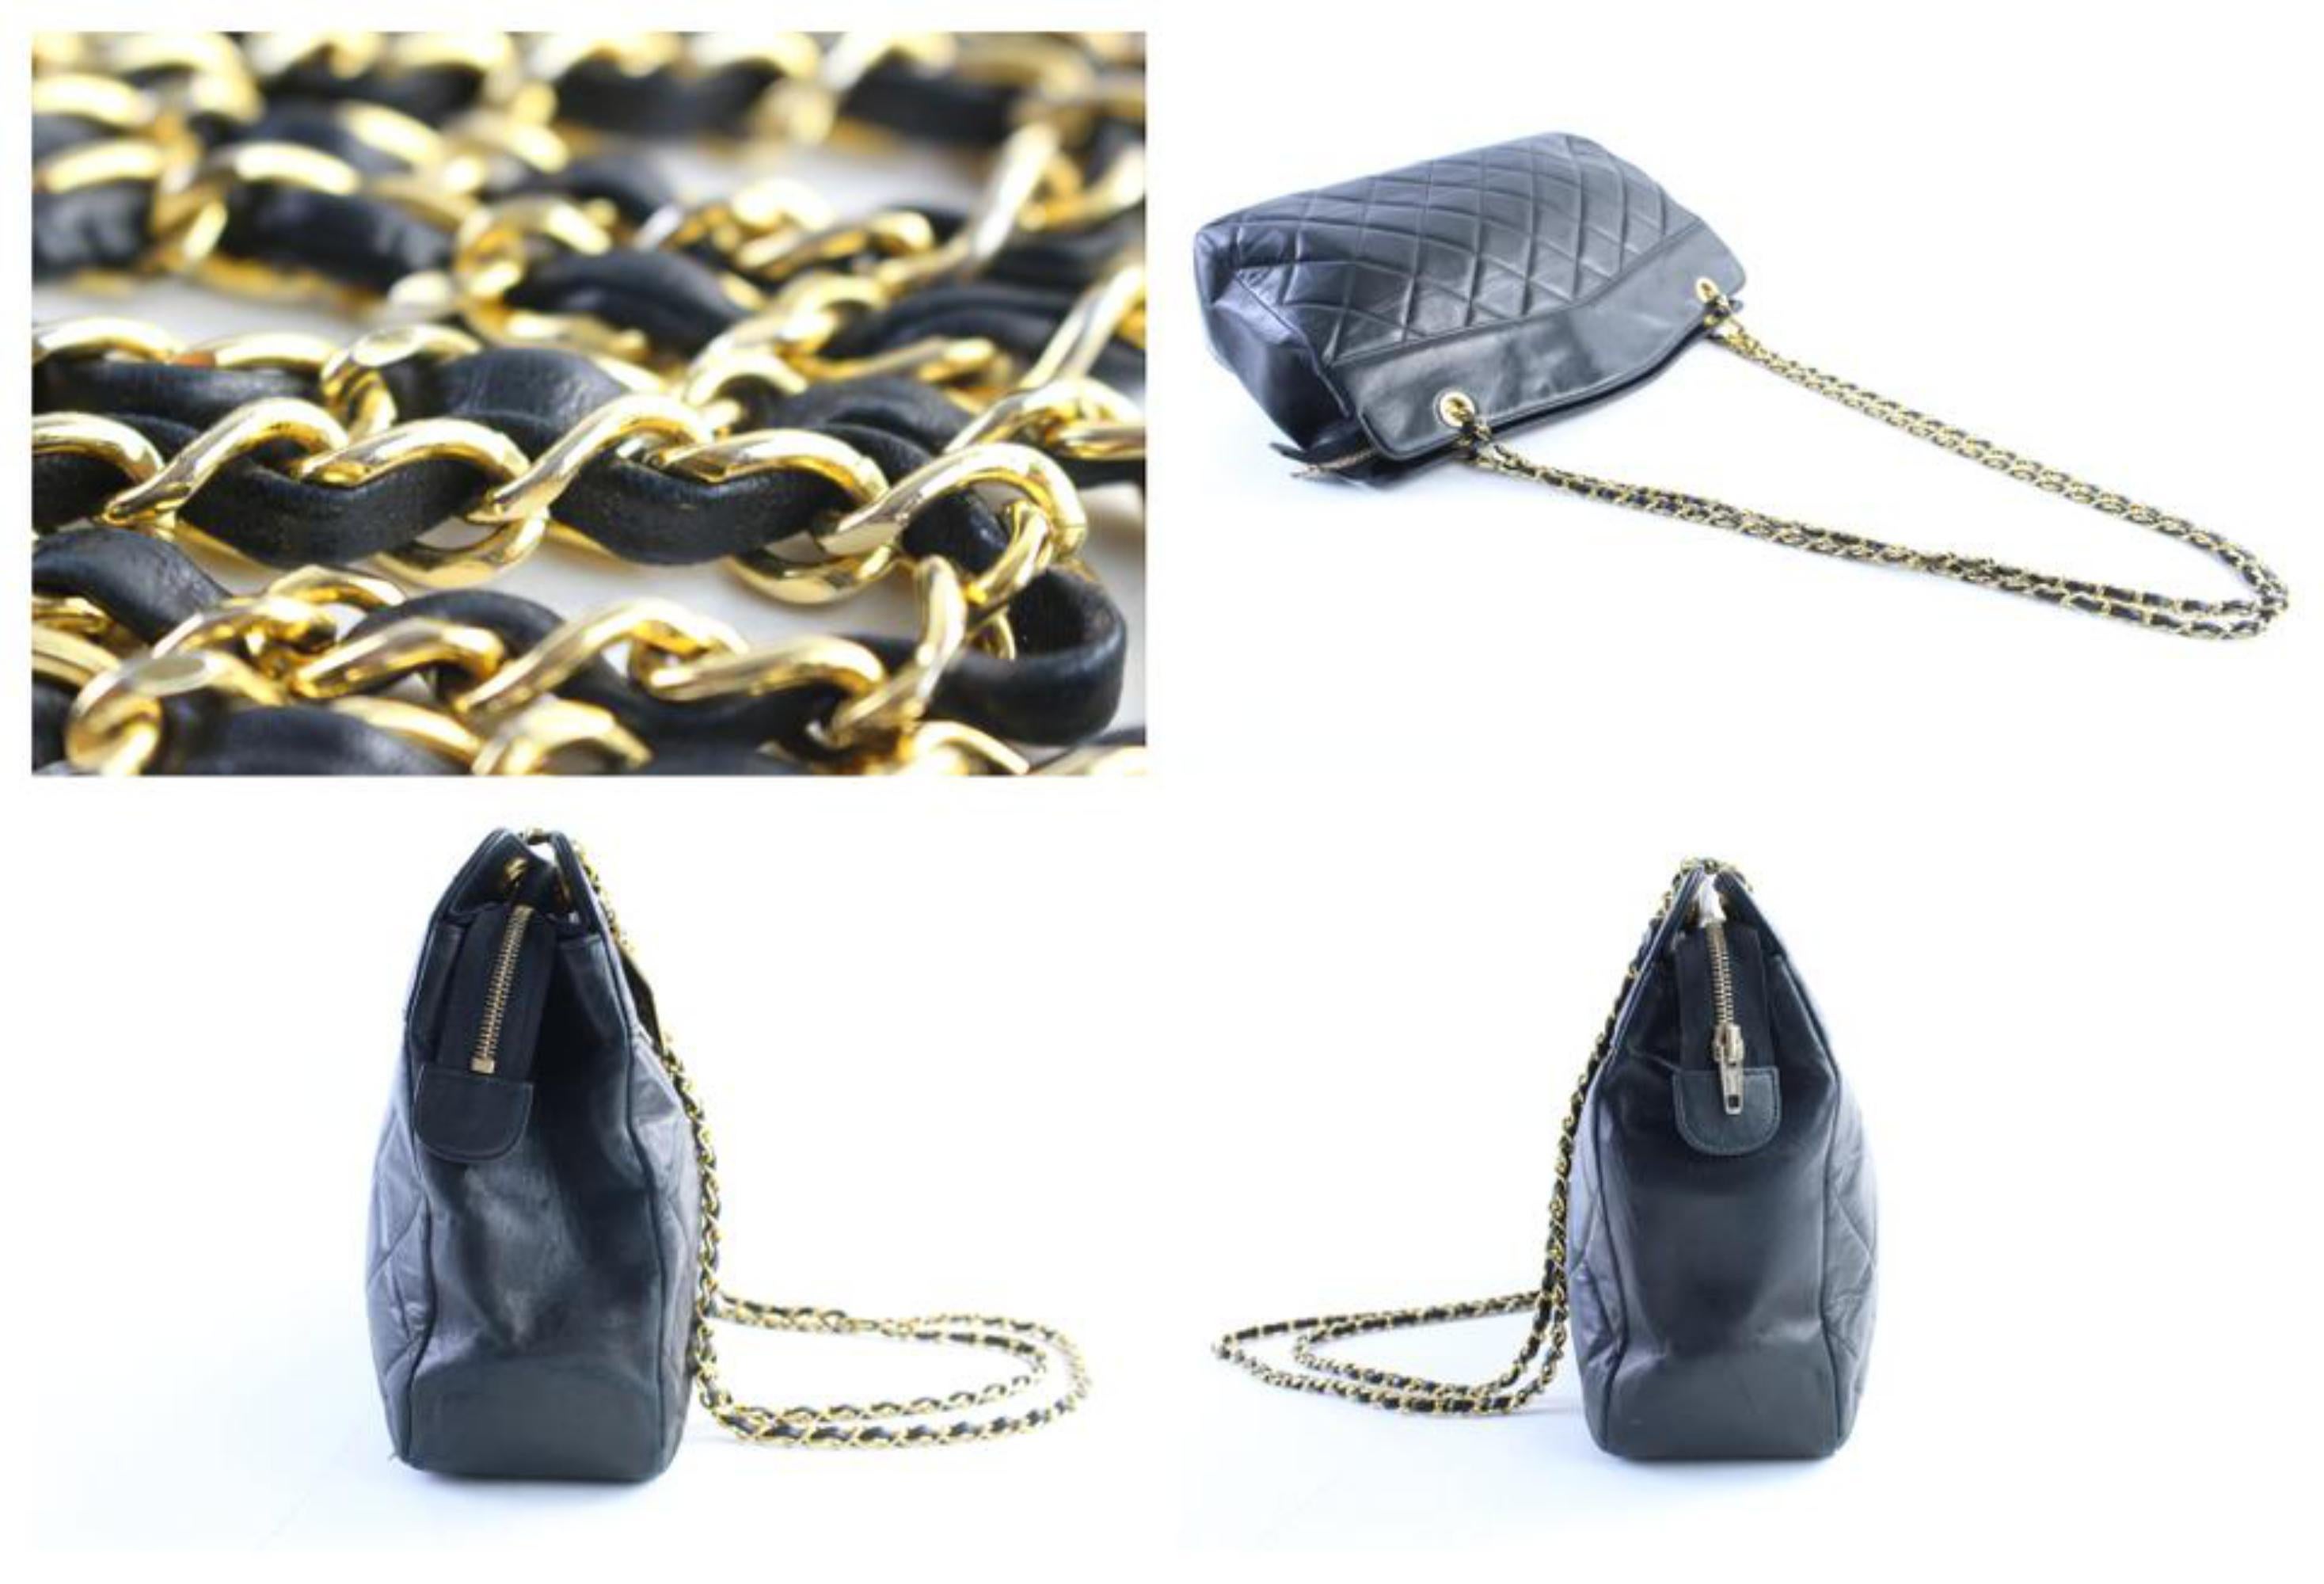 Chanel Medallion Chain Tote 14cr0515 Black Leather Shoulder Bag For Sale 3